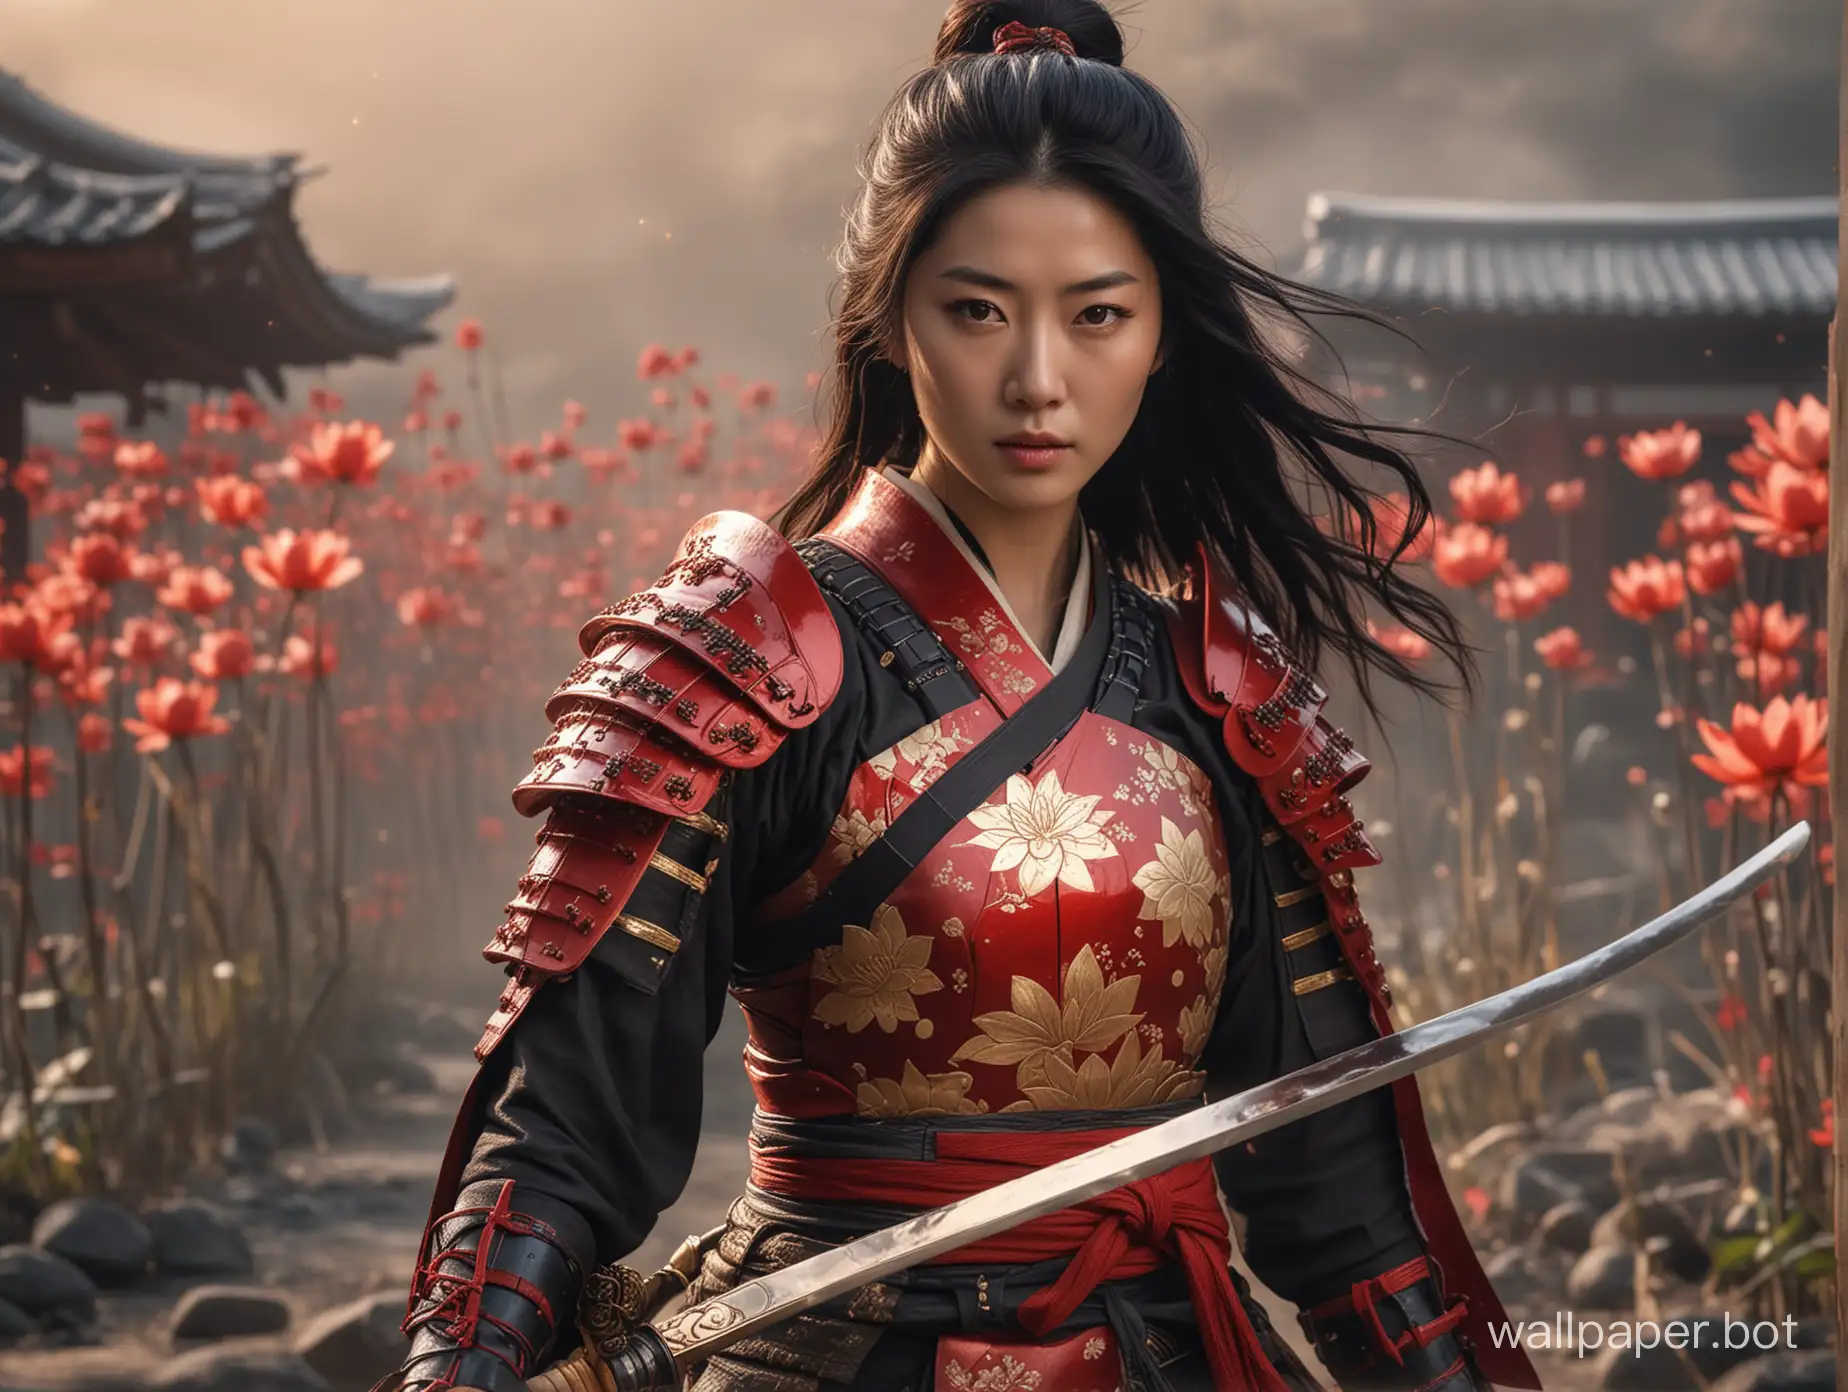 Epic-Female-Samurai-Battle-Scene-Jun-Jihyun-in-Red-Samurai-Armor-with-Katana